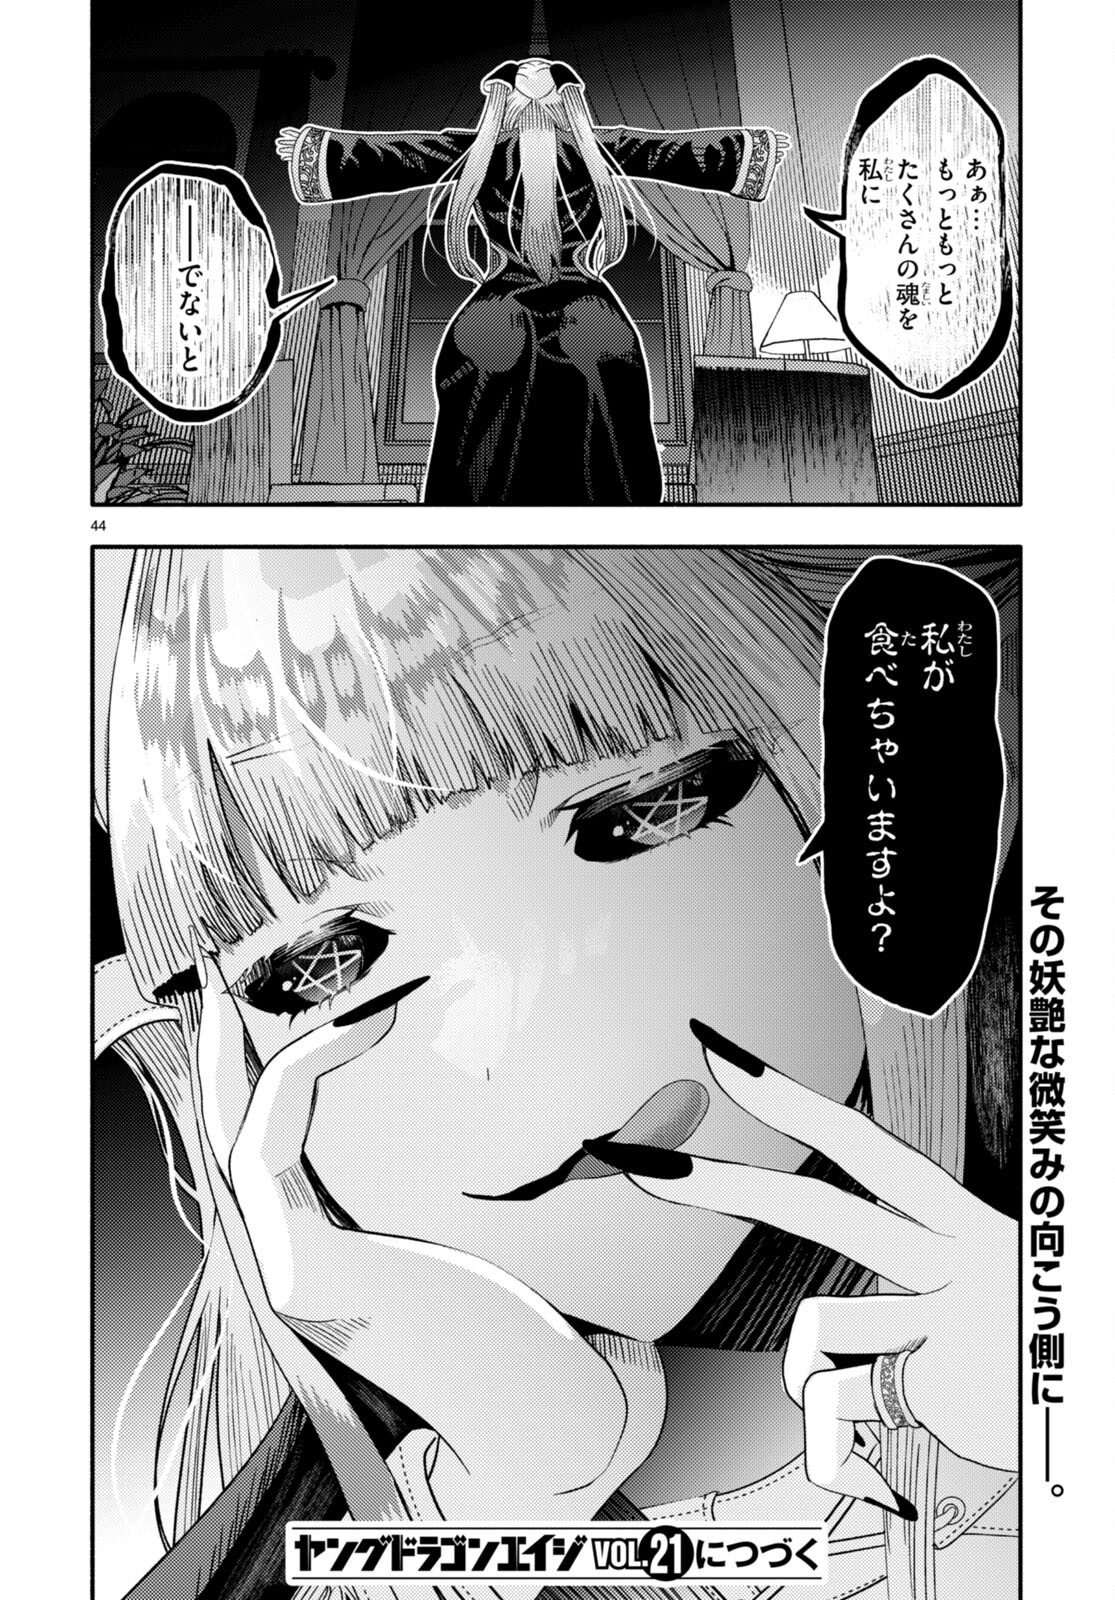 Akuma wa Rozario ni Kiss wo suru - Chapter 3 - Page 46